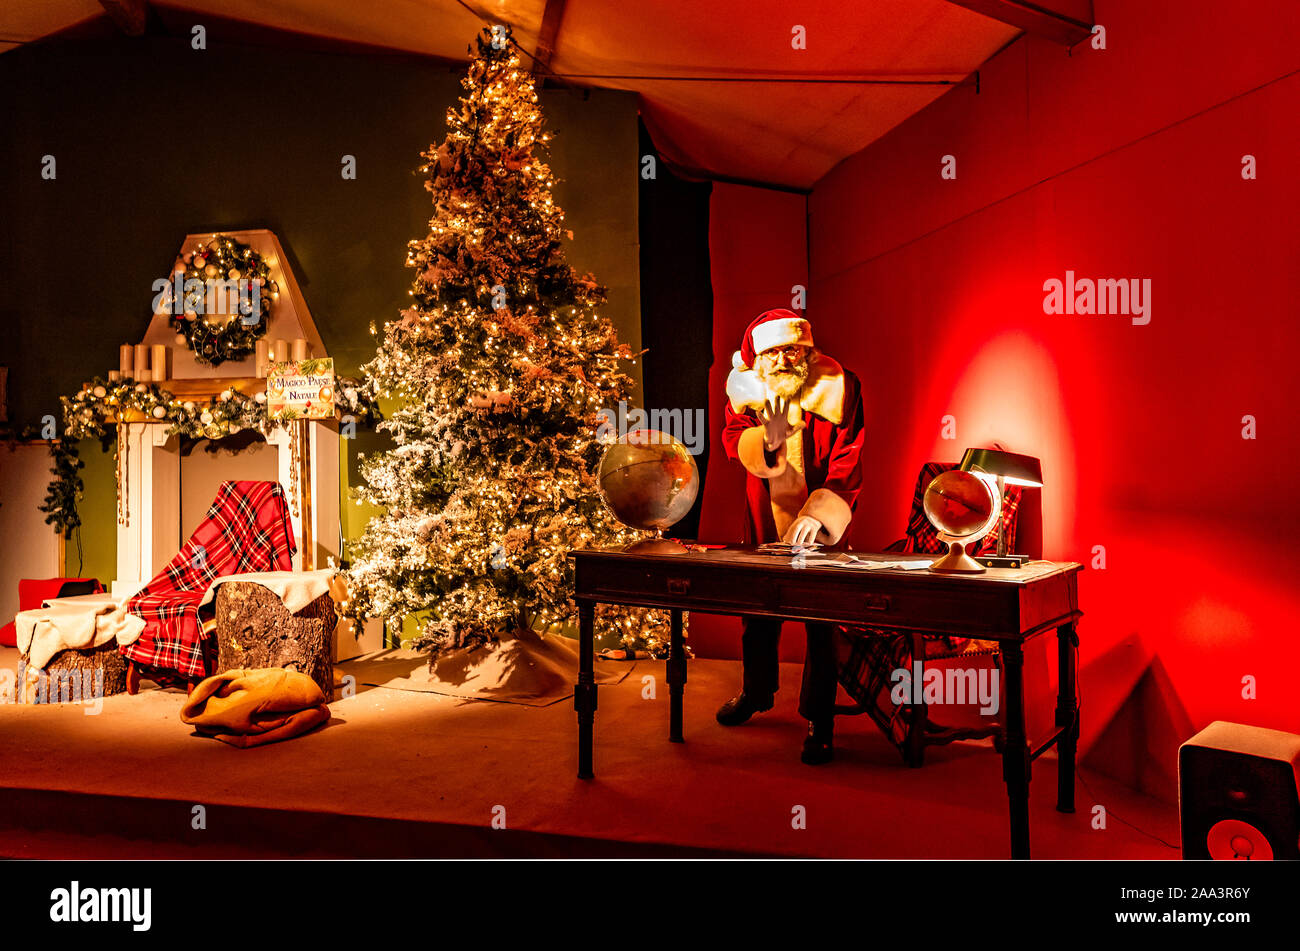 Italien Piemont Langhe Govone Il Magico Paese Di Natale" (Das magische Land von Weihnachten) - Performances und Installationen in der Heimat von Santa Claus Santa Claus Stockfoto